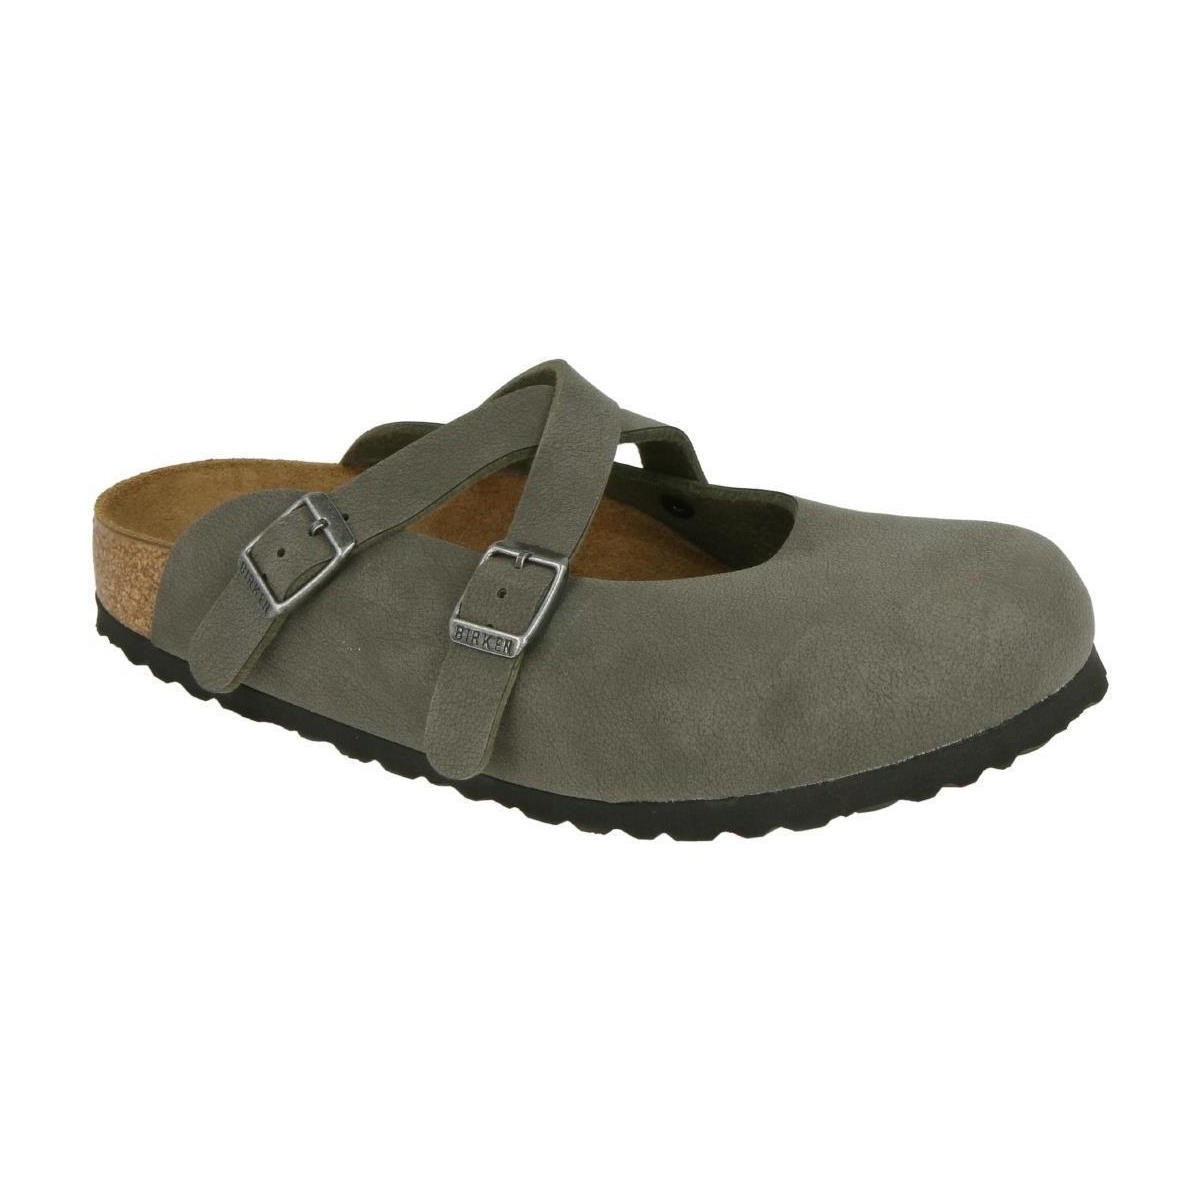 Schoenen Dames Leren slippers Birkenstock 1015713 Groen